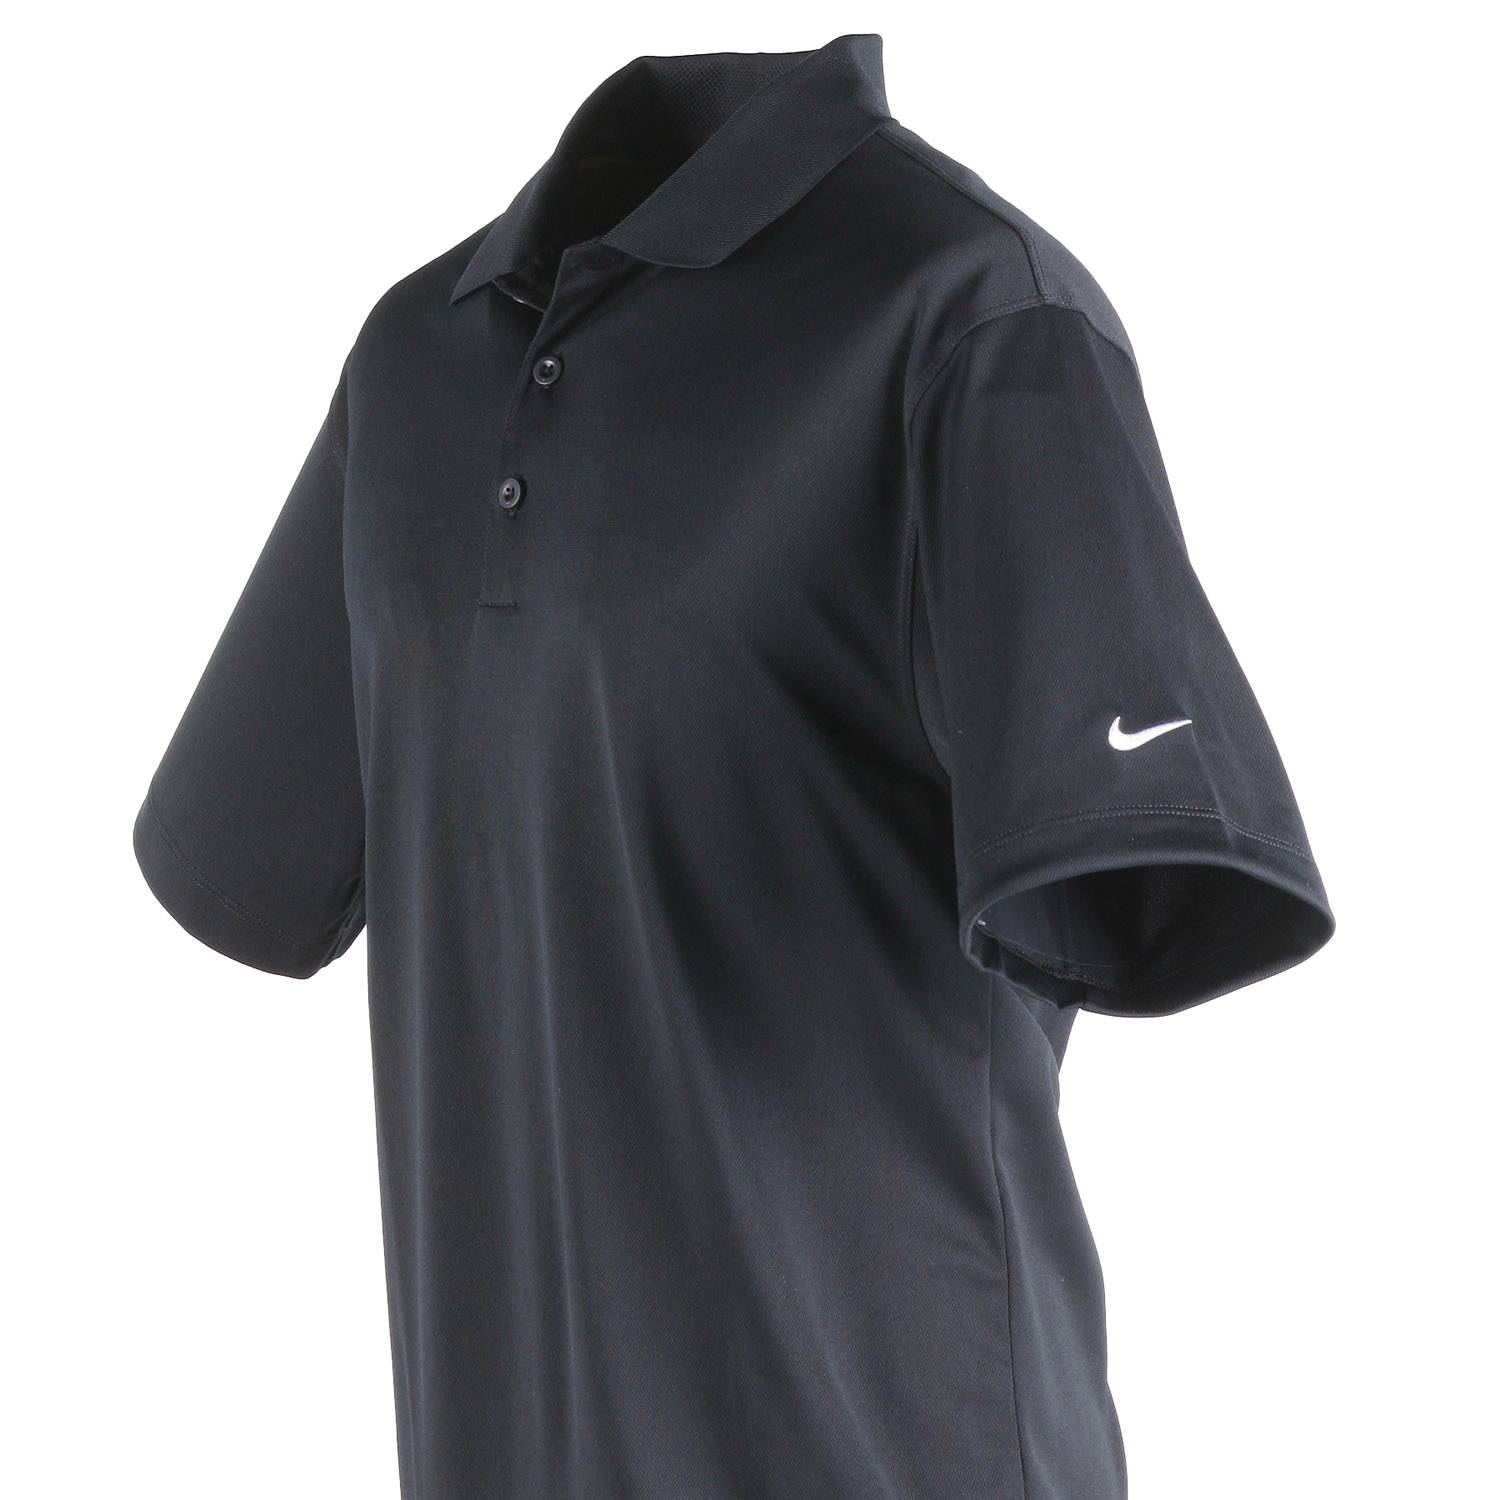 Nike Polo Shirt at Galls